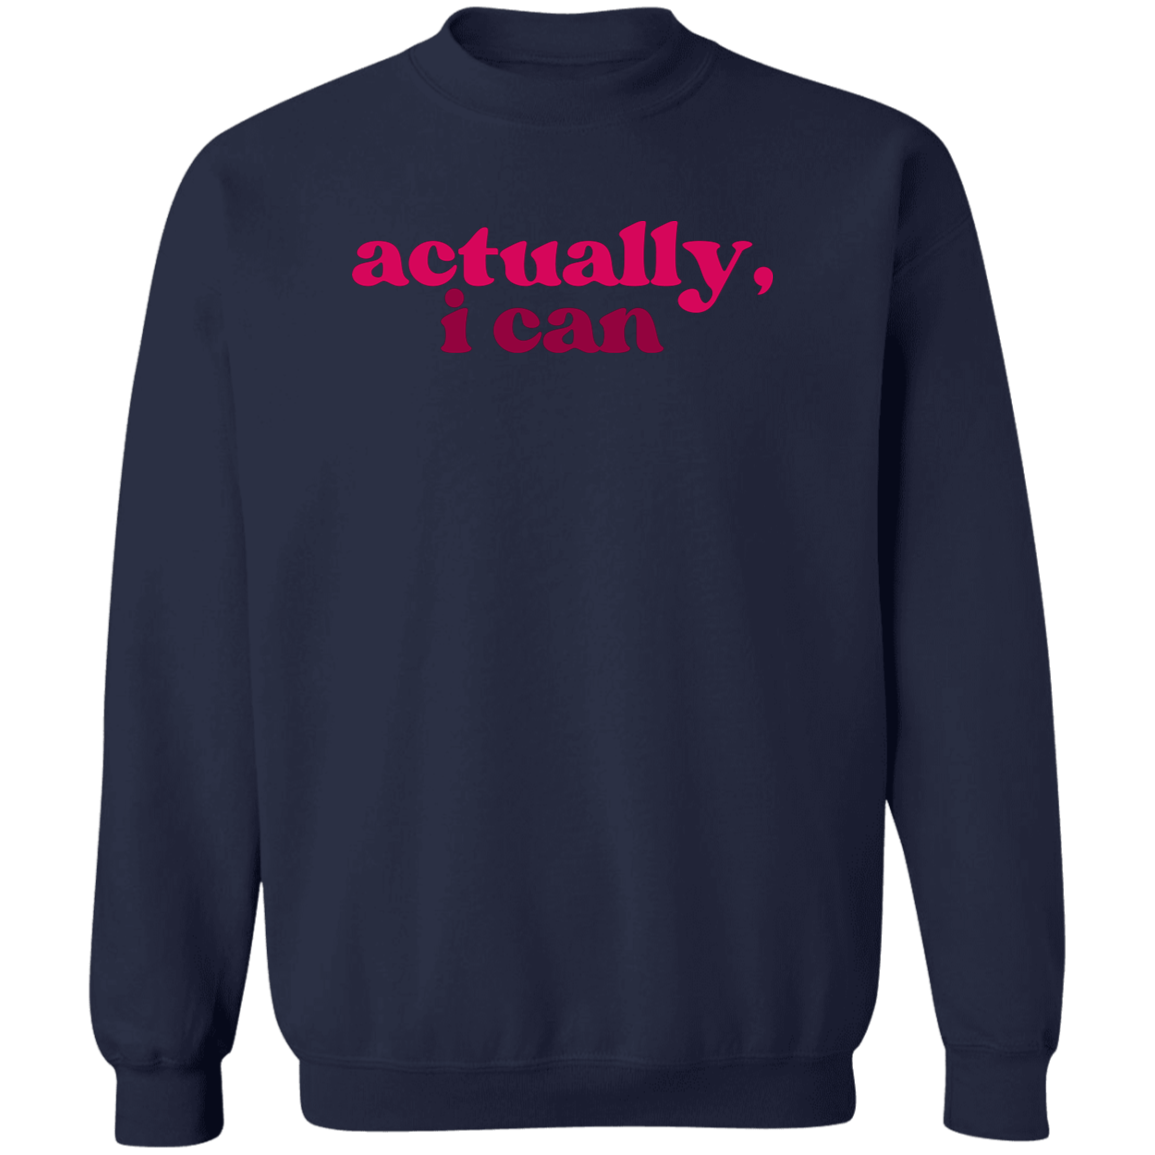 Actually, I Can Sweatshirt